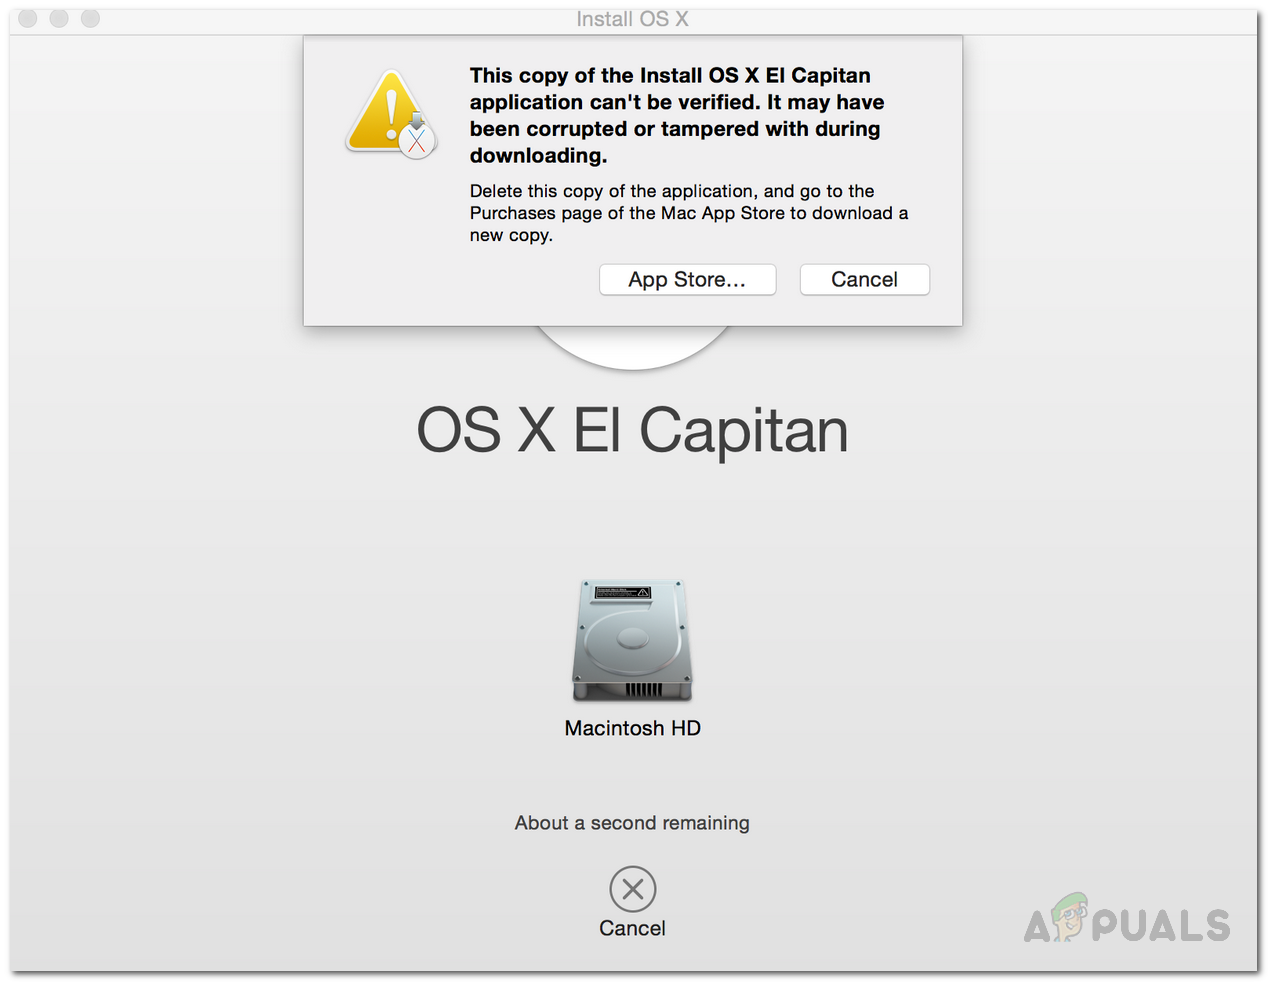 [FIX] Esta copia de la aplicación Instalar OS X El Capitan no se puede verificar